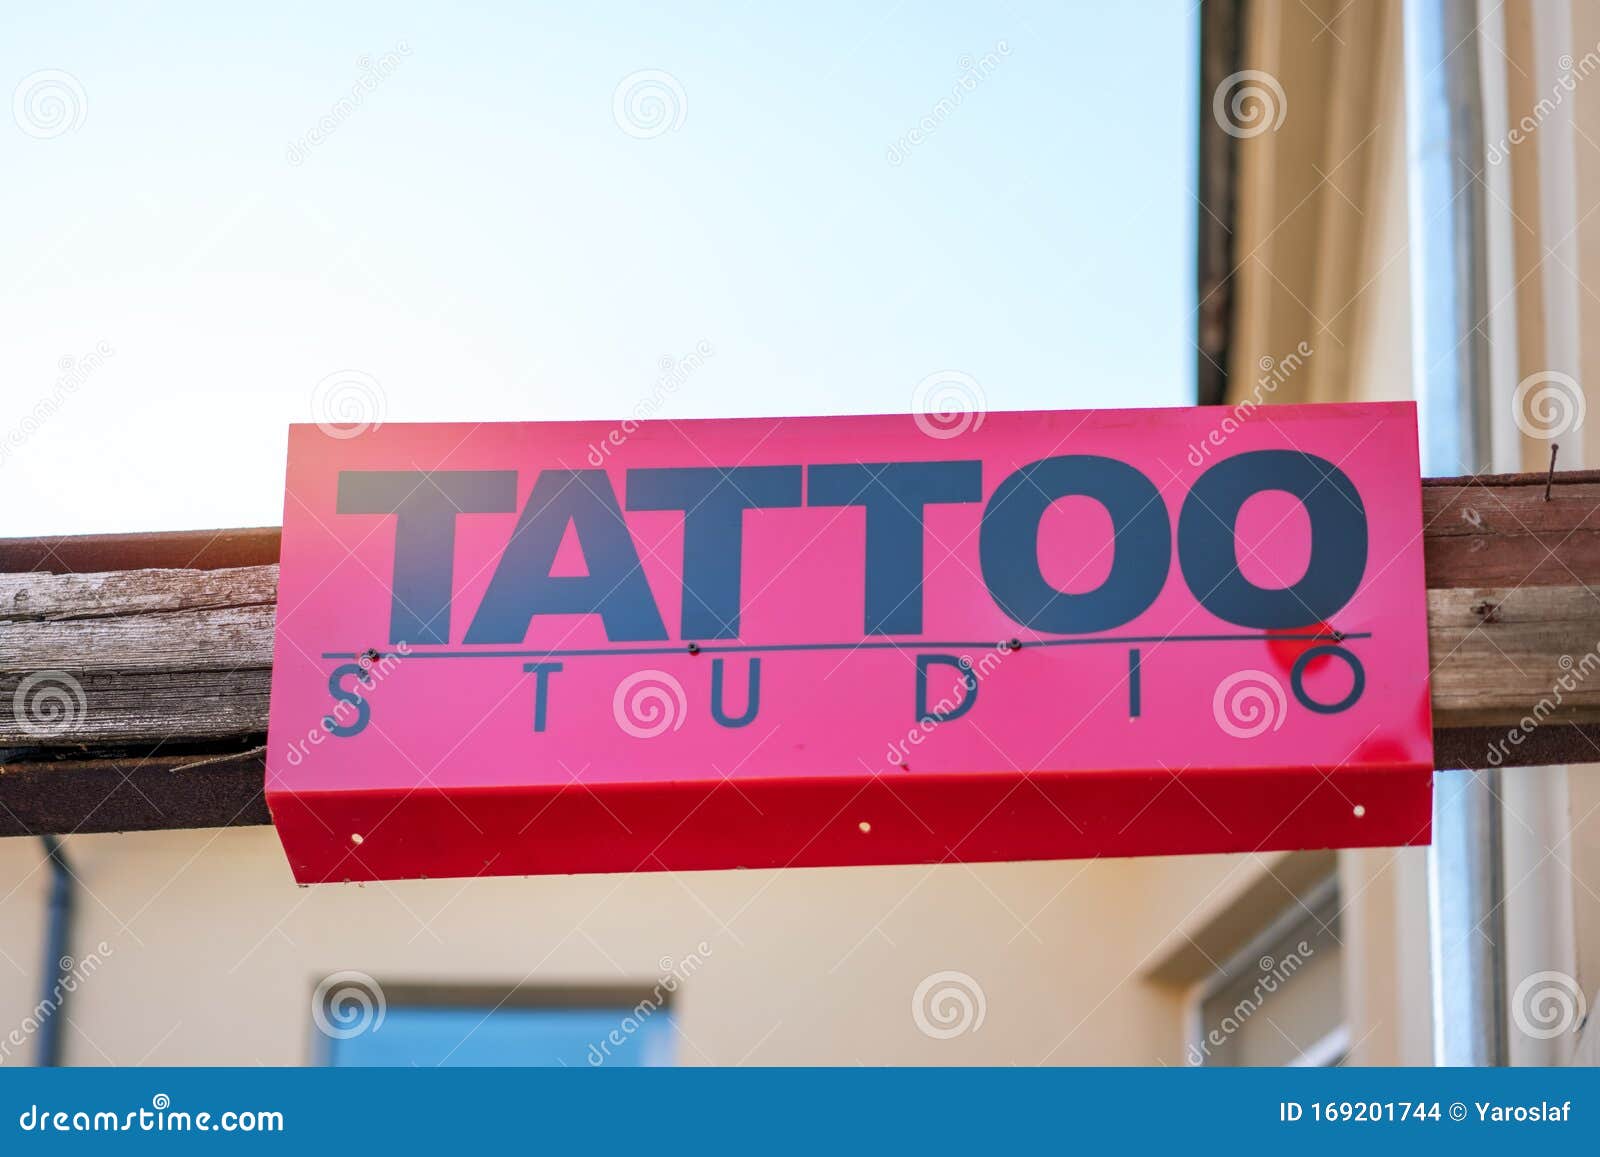 Travis Street Tattoo